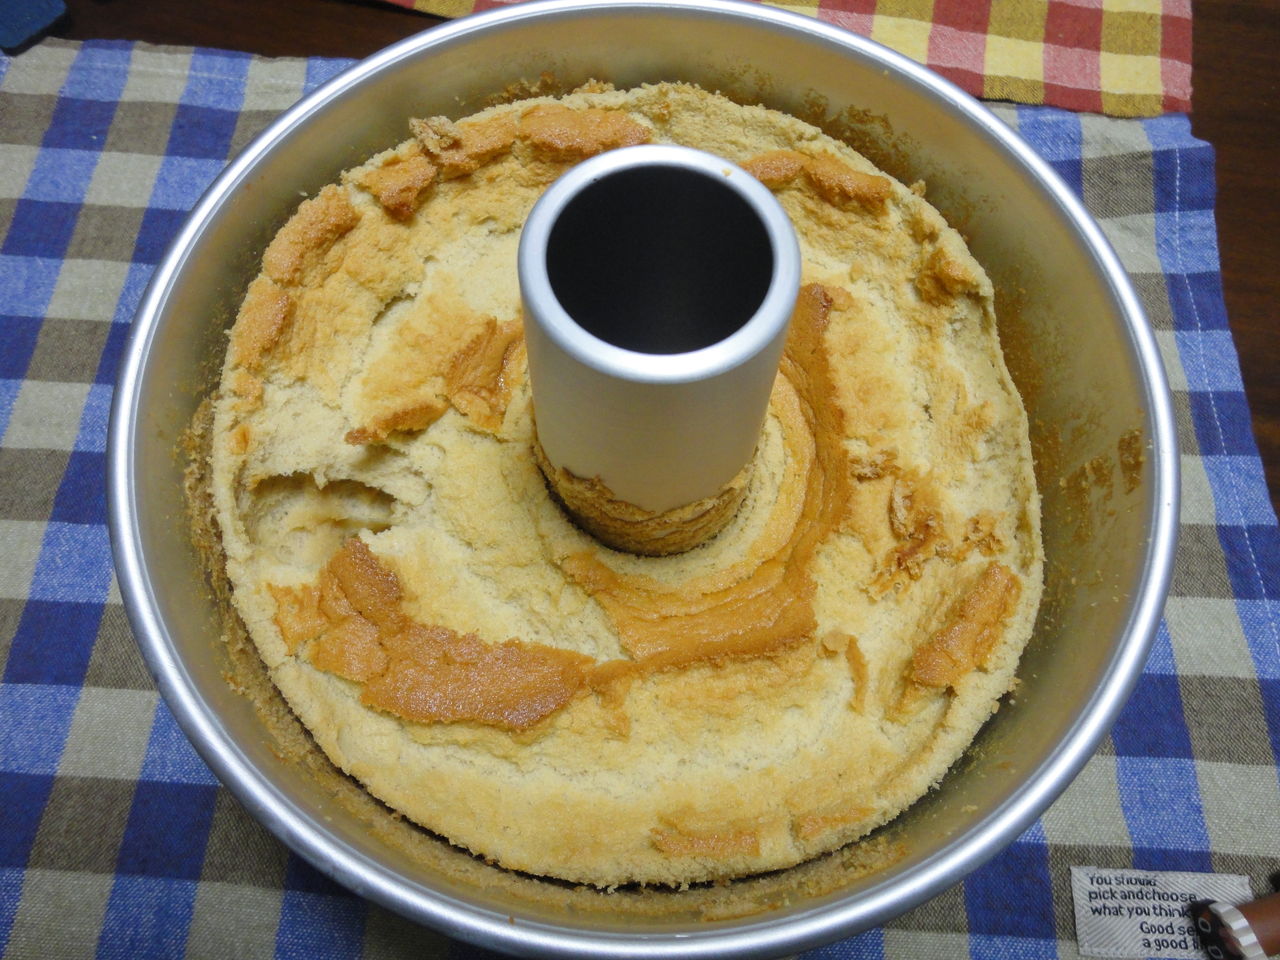 シフォンケーキ 焼いたあとしぼむ シフォンケーキが焼いている最中にしぼみ始めるのは